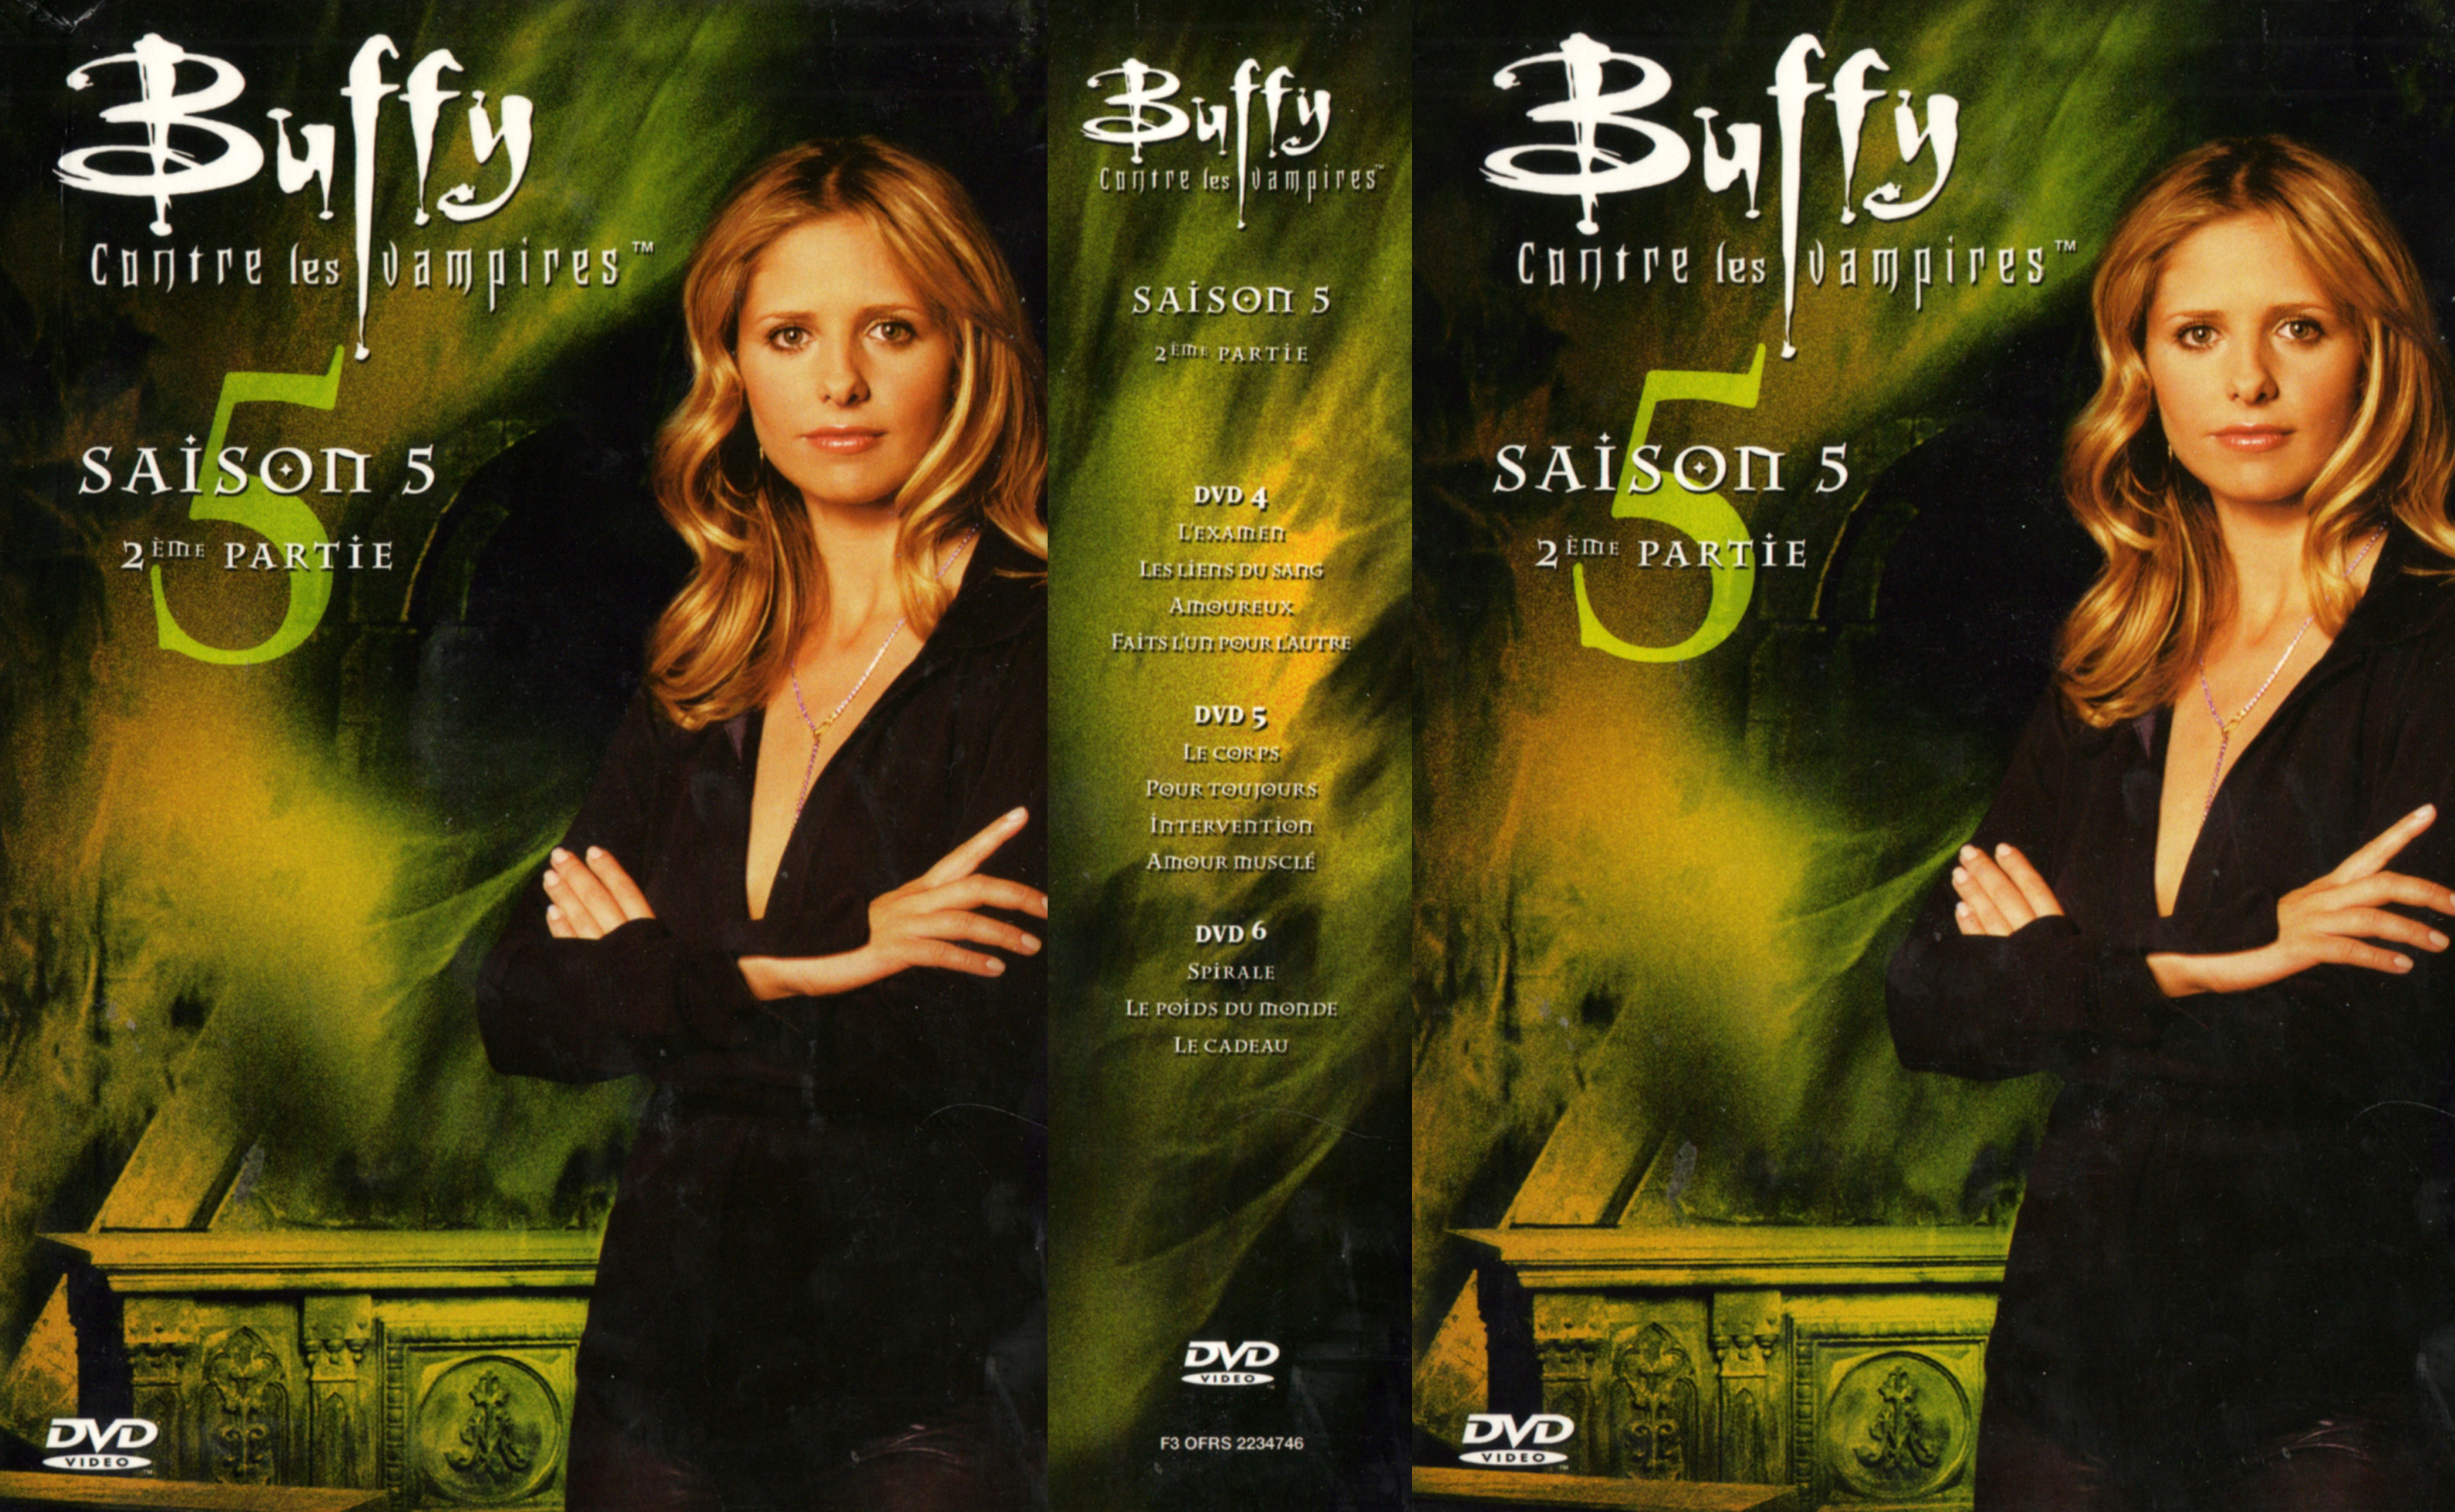 Jaquette DVD Buffy contre les vampires Saison 5 vol 2 COFFRET